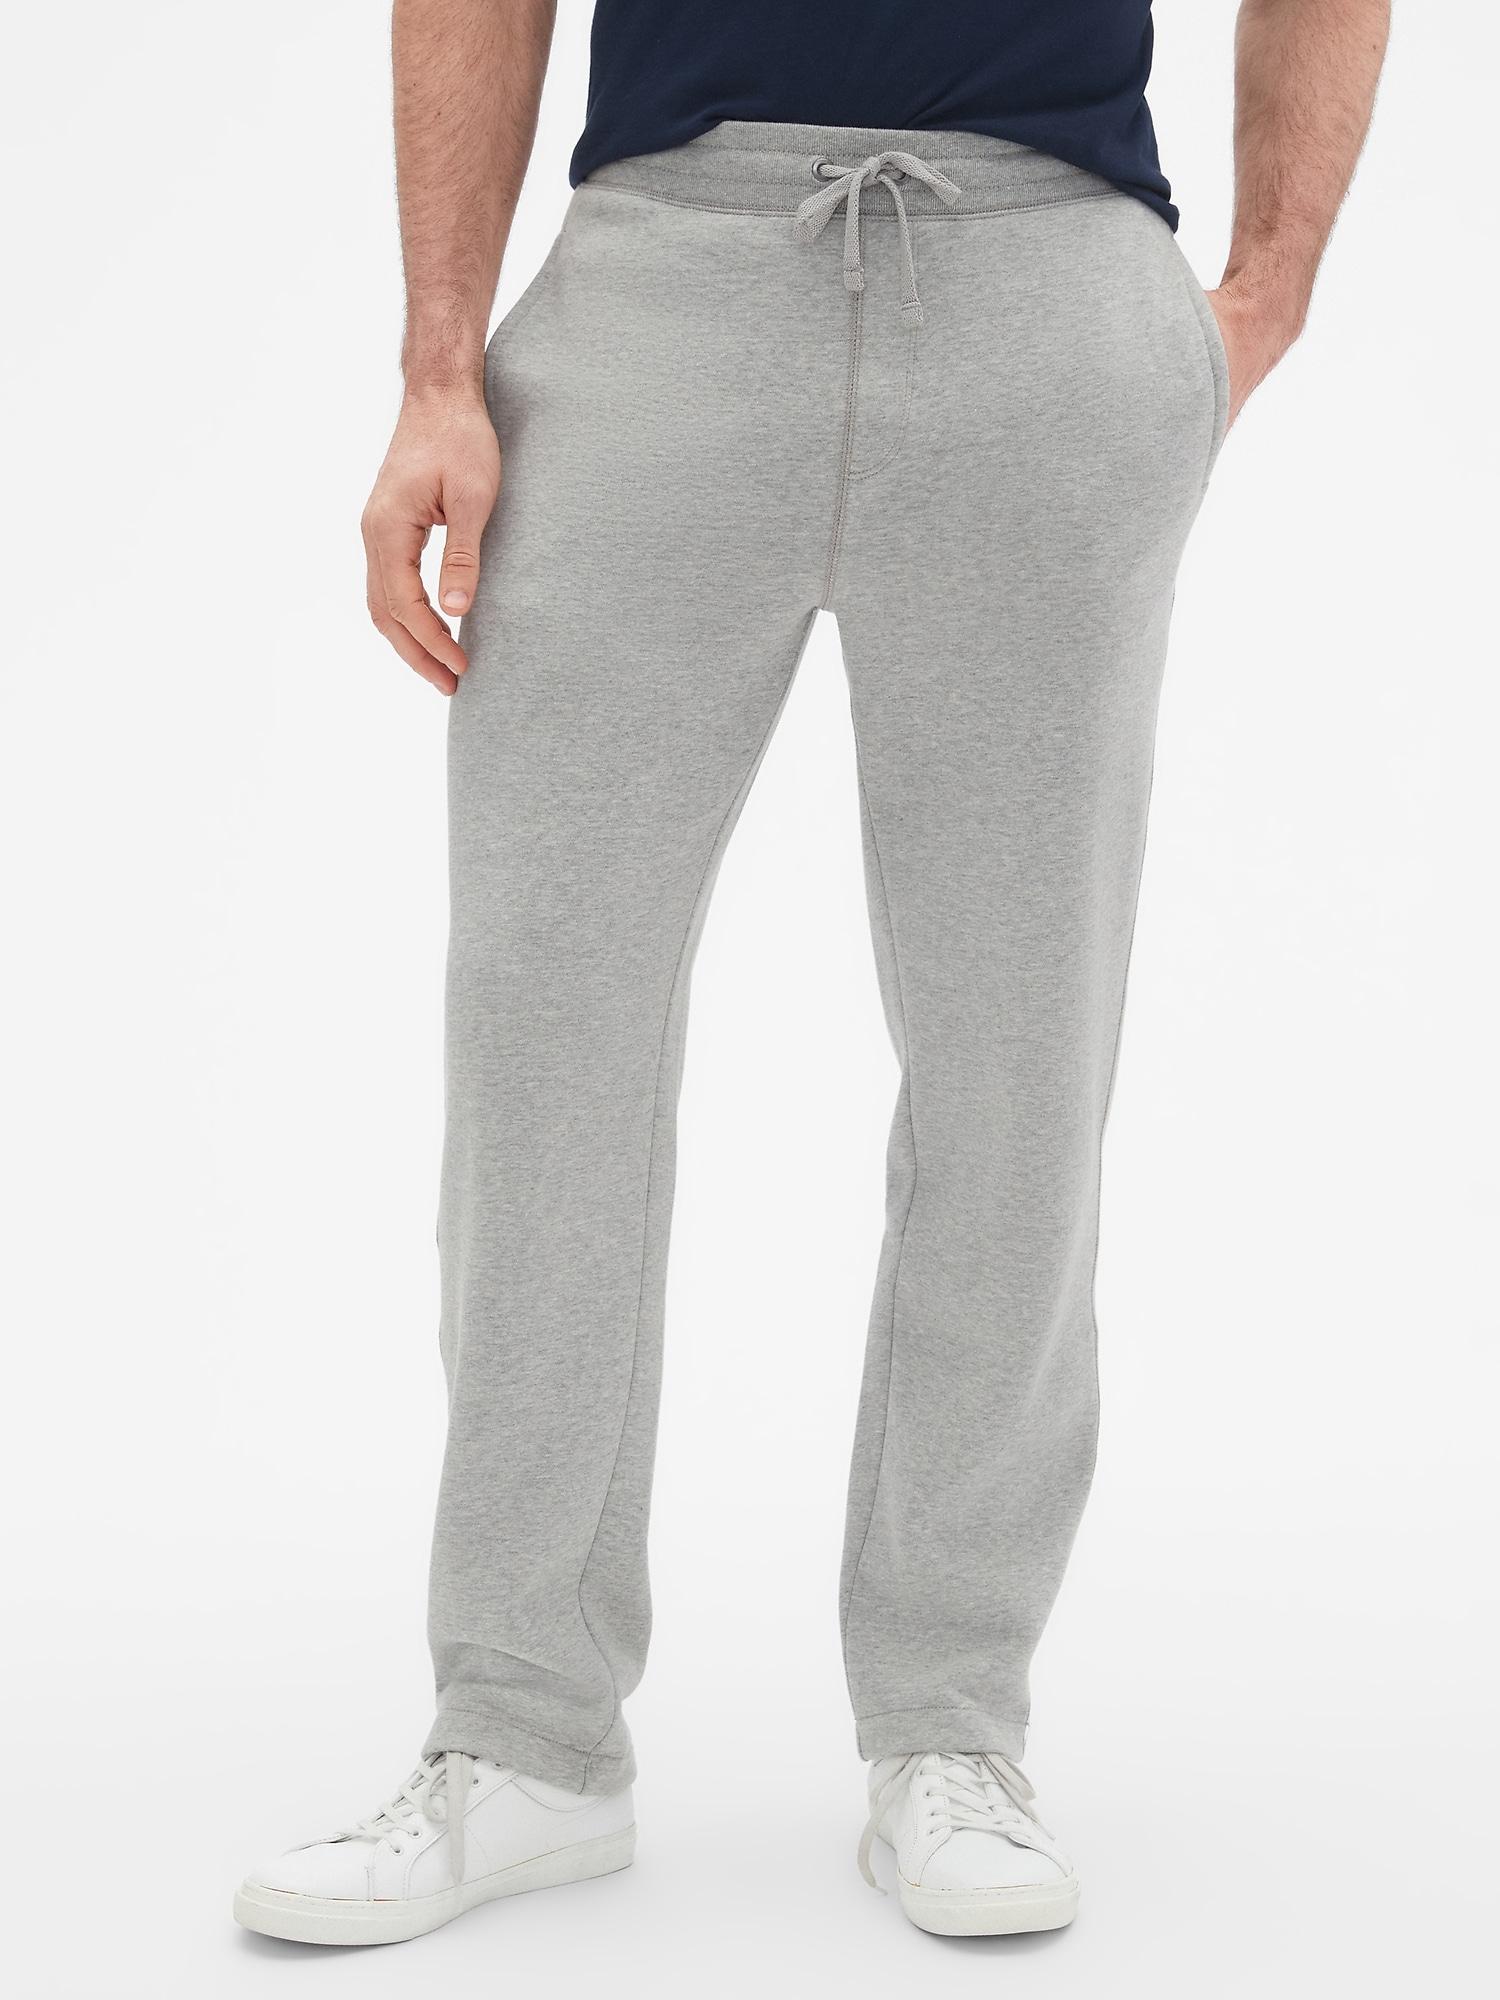 GAP Factory Fleece Sweatpants in Grey Heather (Gray) for Men - Save 32% ...